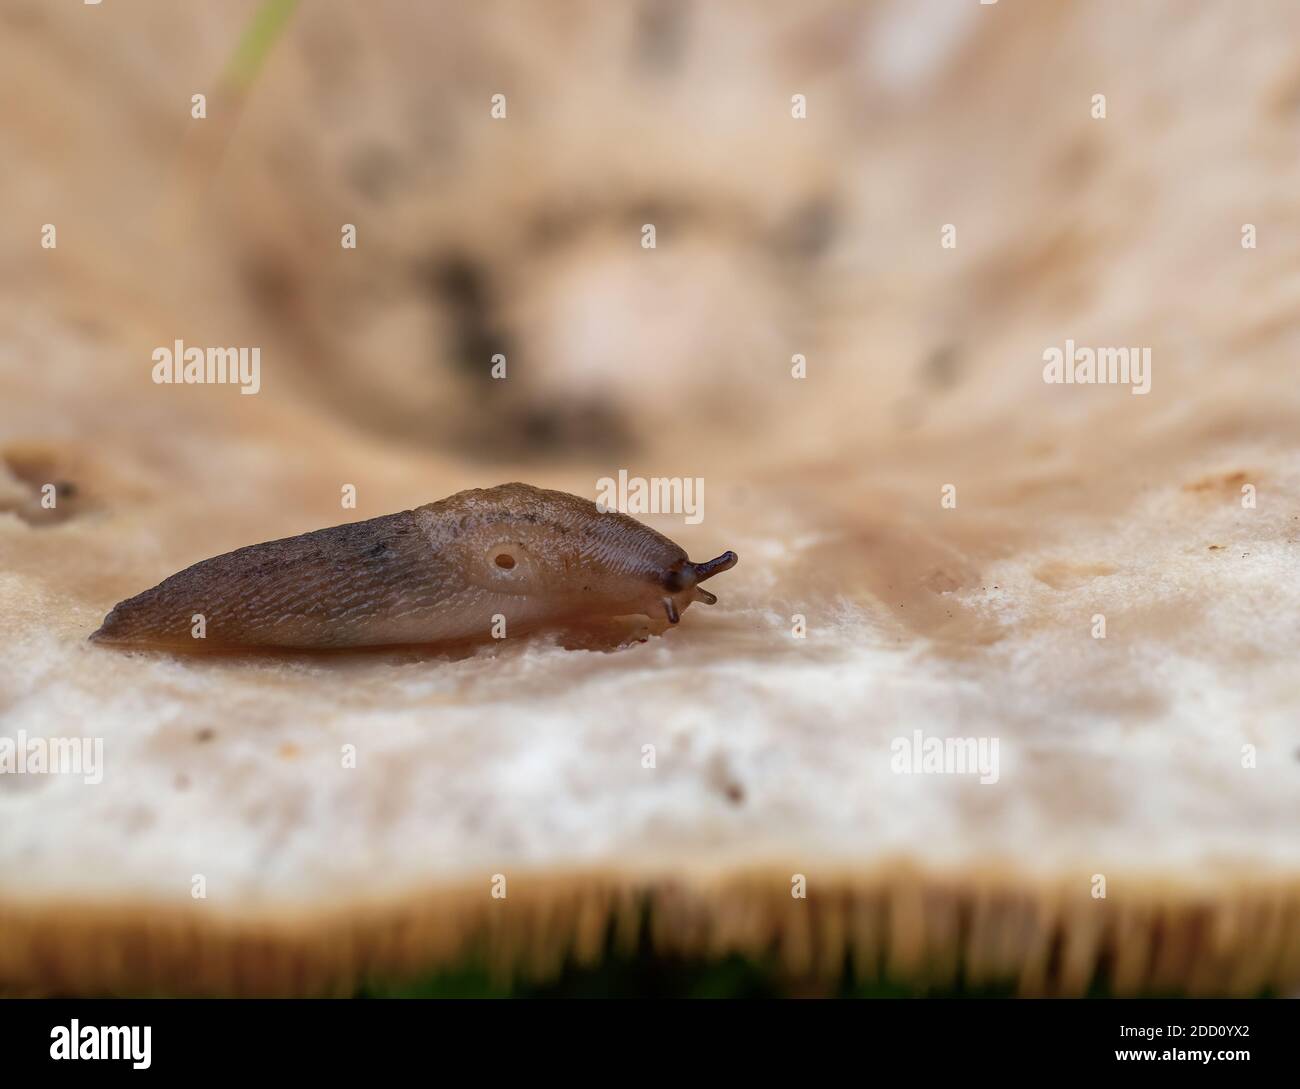 Bruno schiaffo mangiare su fungo macro, Regno Unito, mantello visibile, pneumostomo e tentacoli. Foto Stock